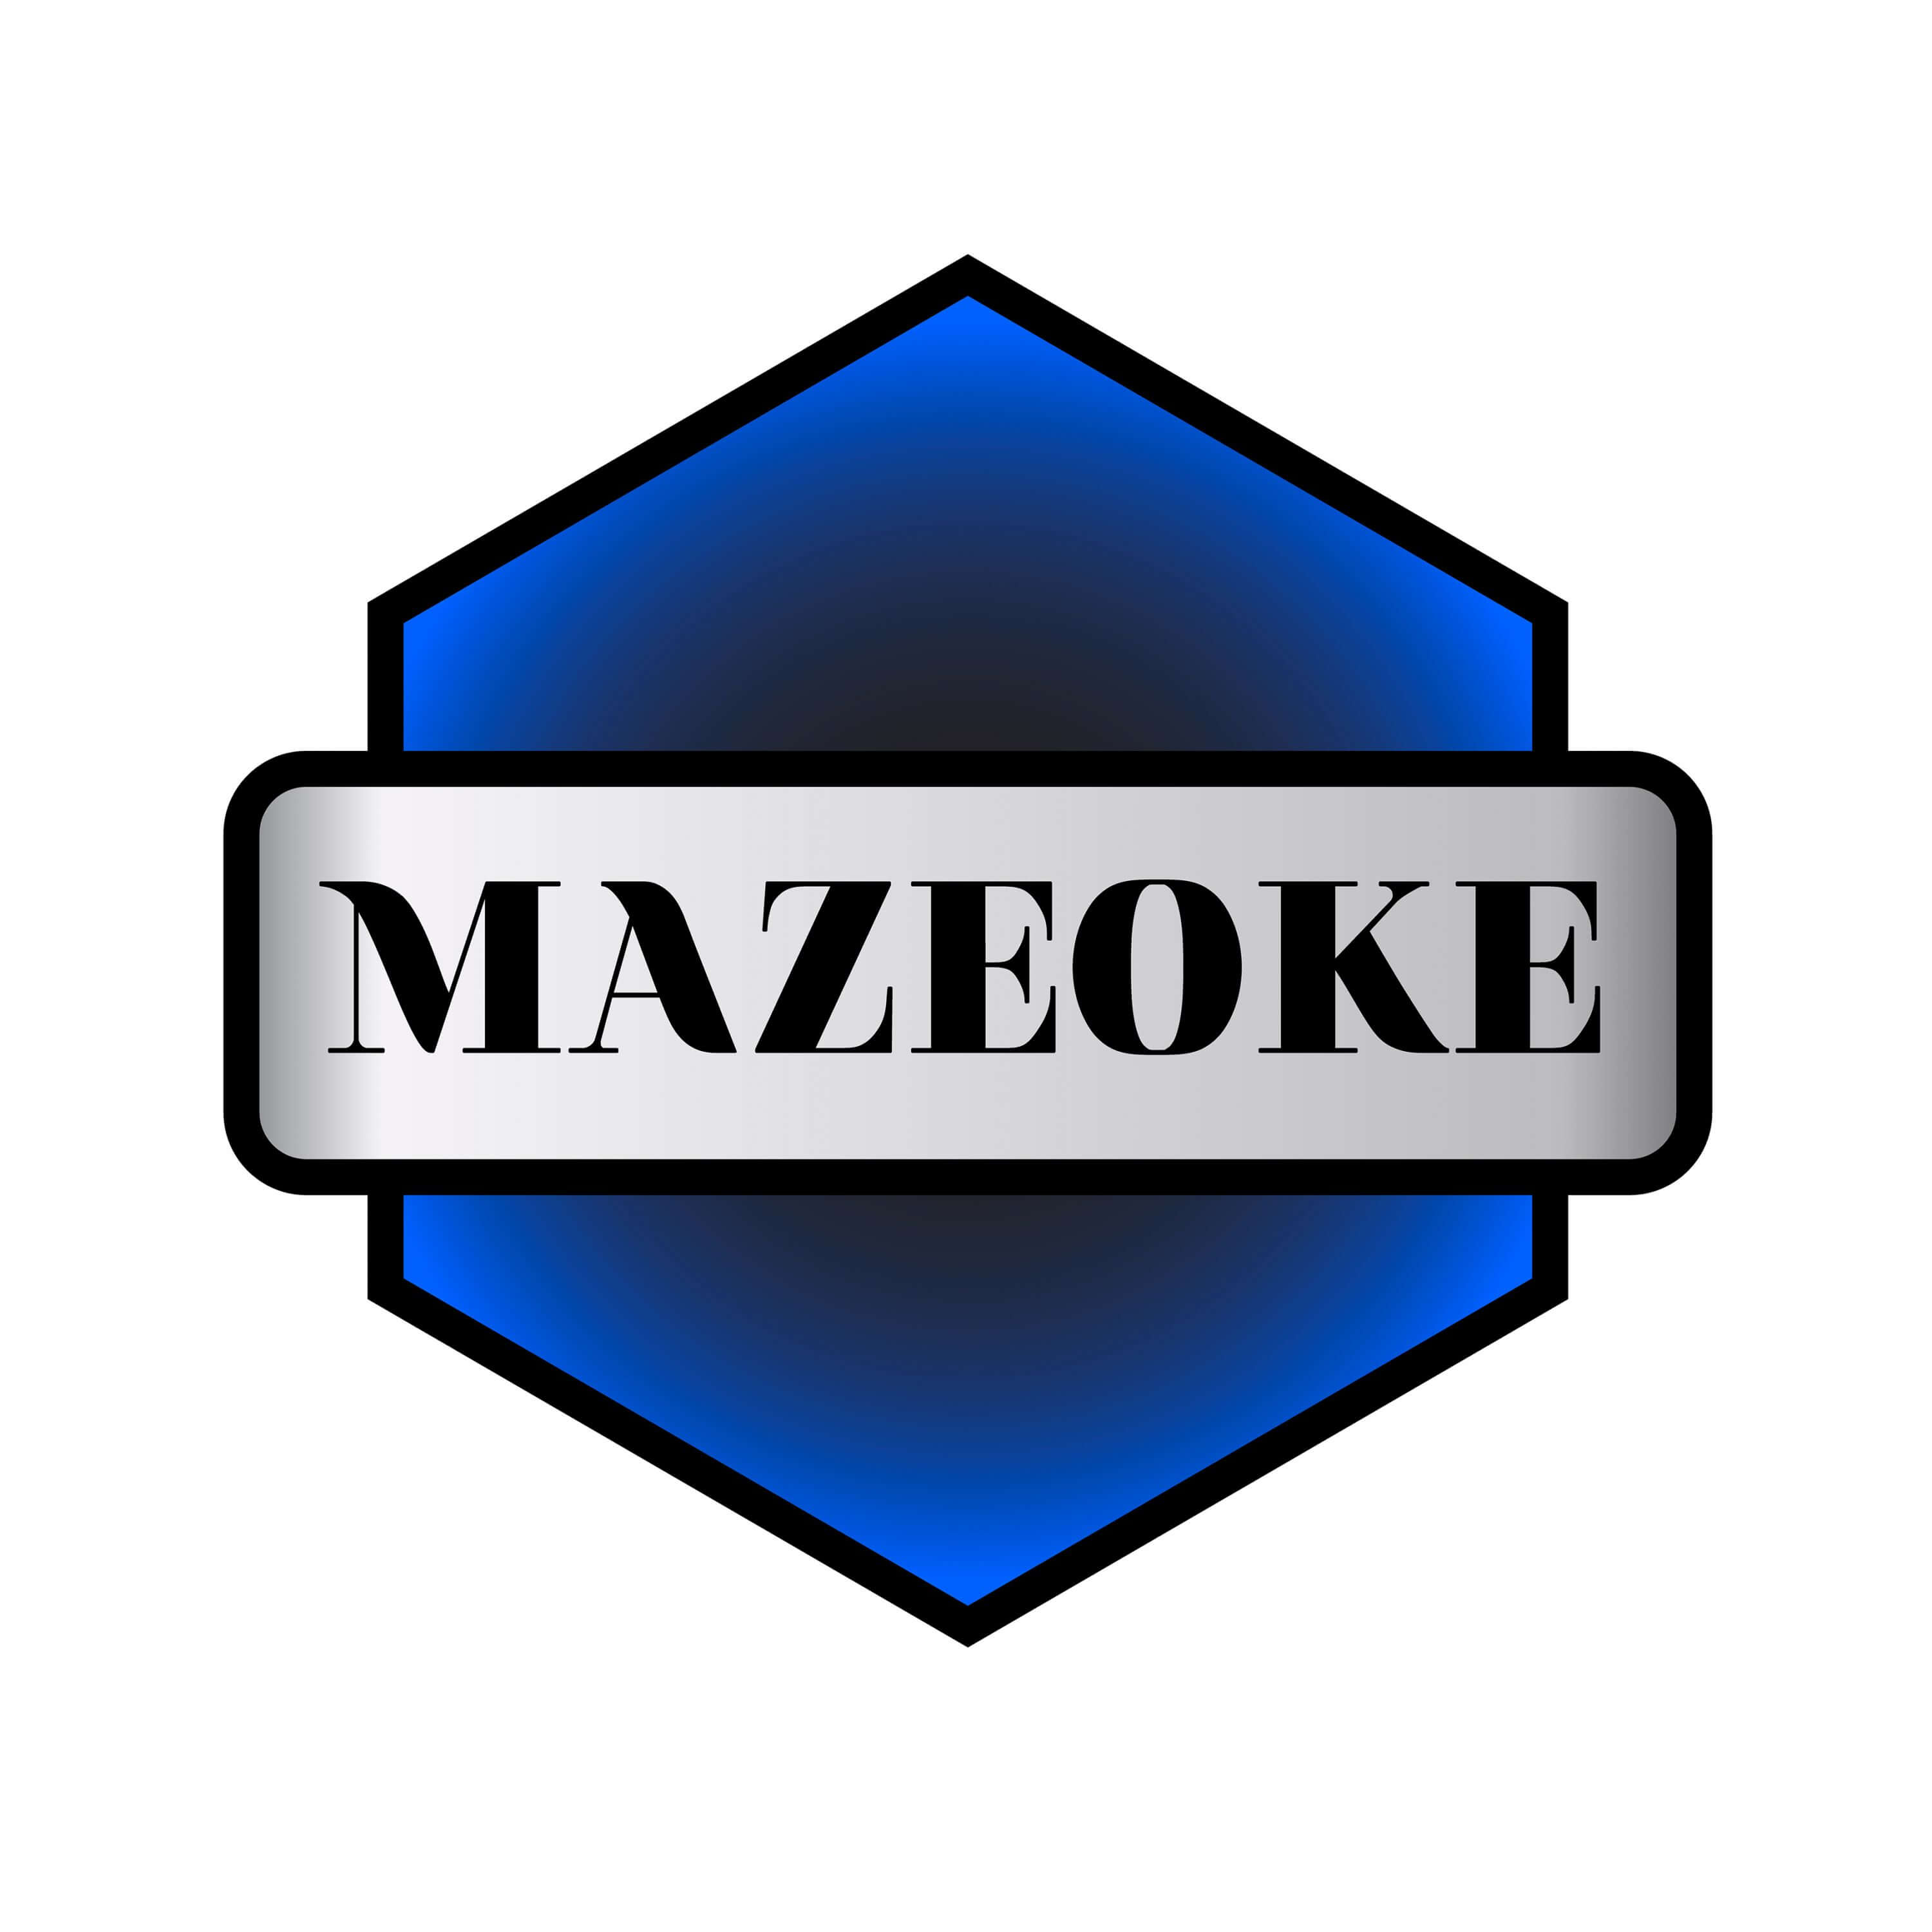 マゼオケ (Mazeoke)